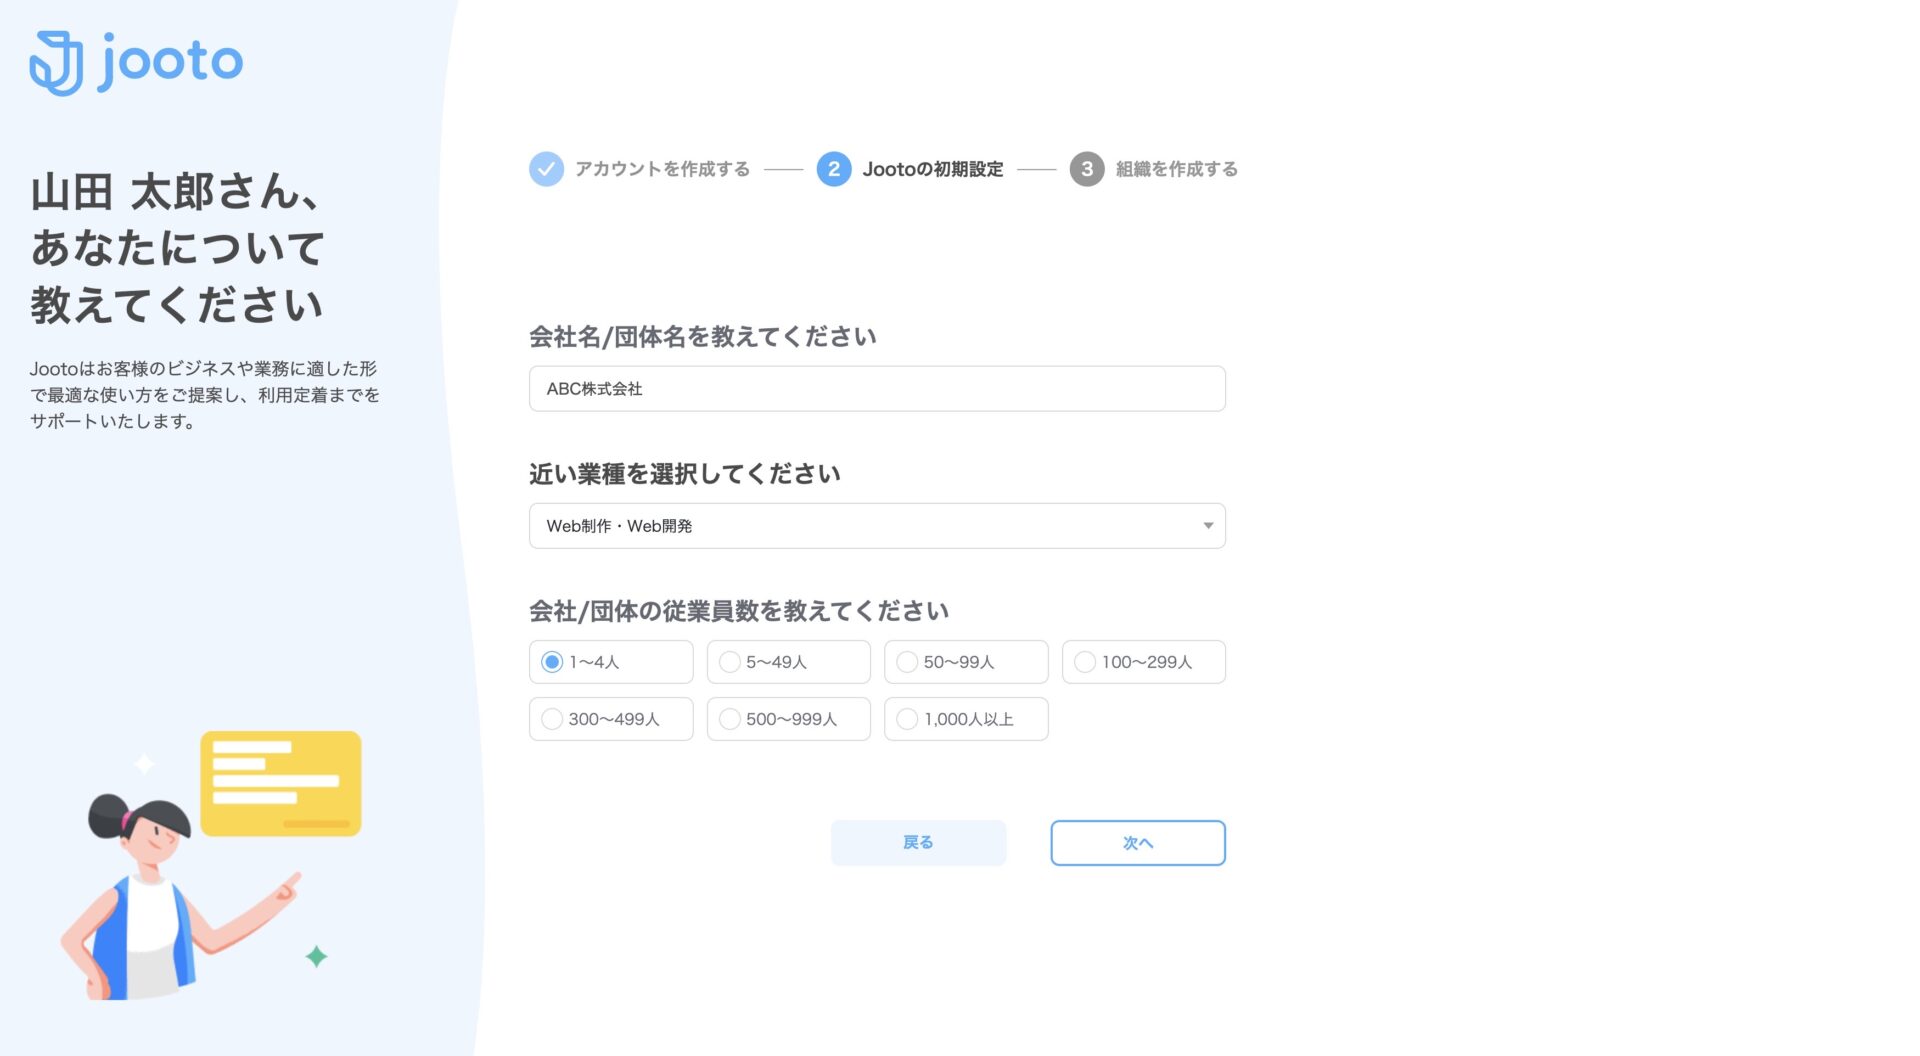 Jootoのアカウント作成でチームの情報を入力する画面